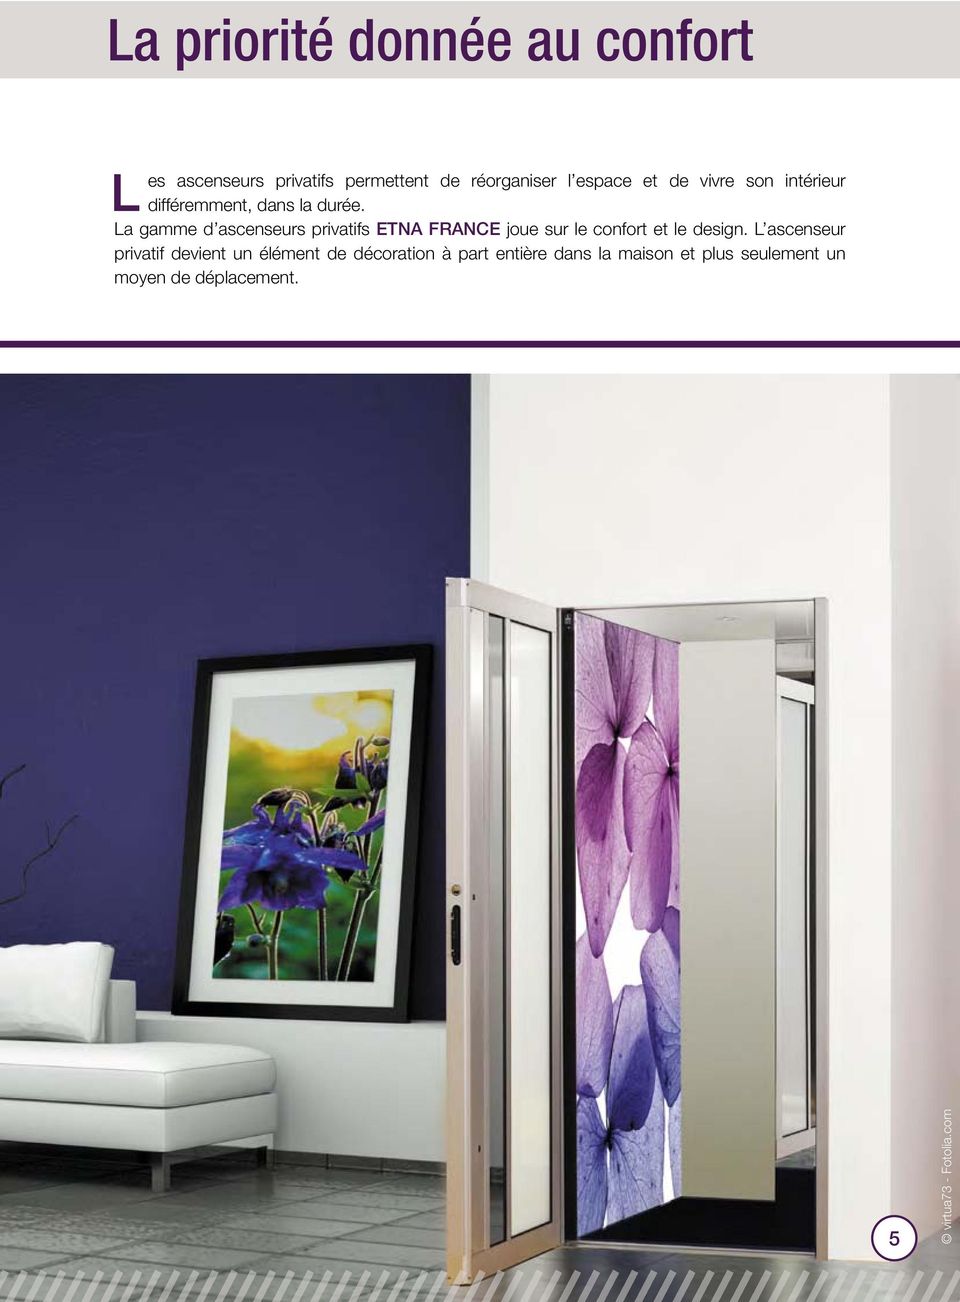 la gamme d ascenseurs privatifs ETNA FRANCE joue sur le confort et le design.